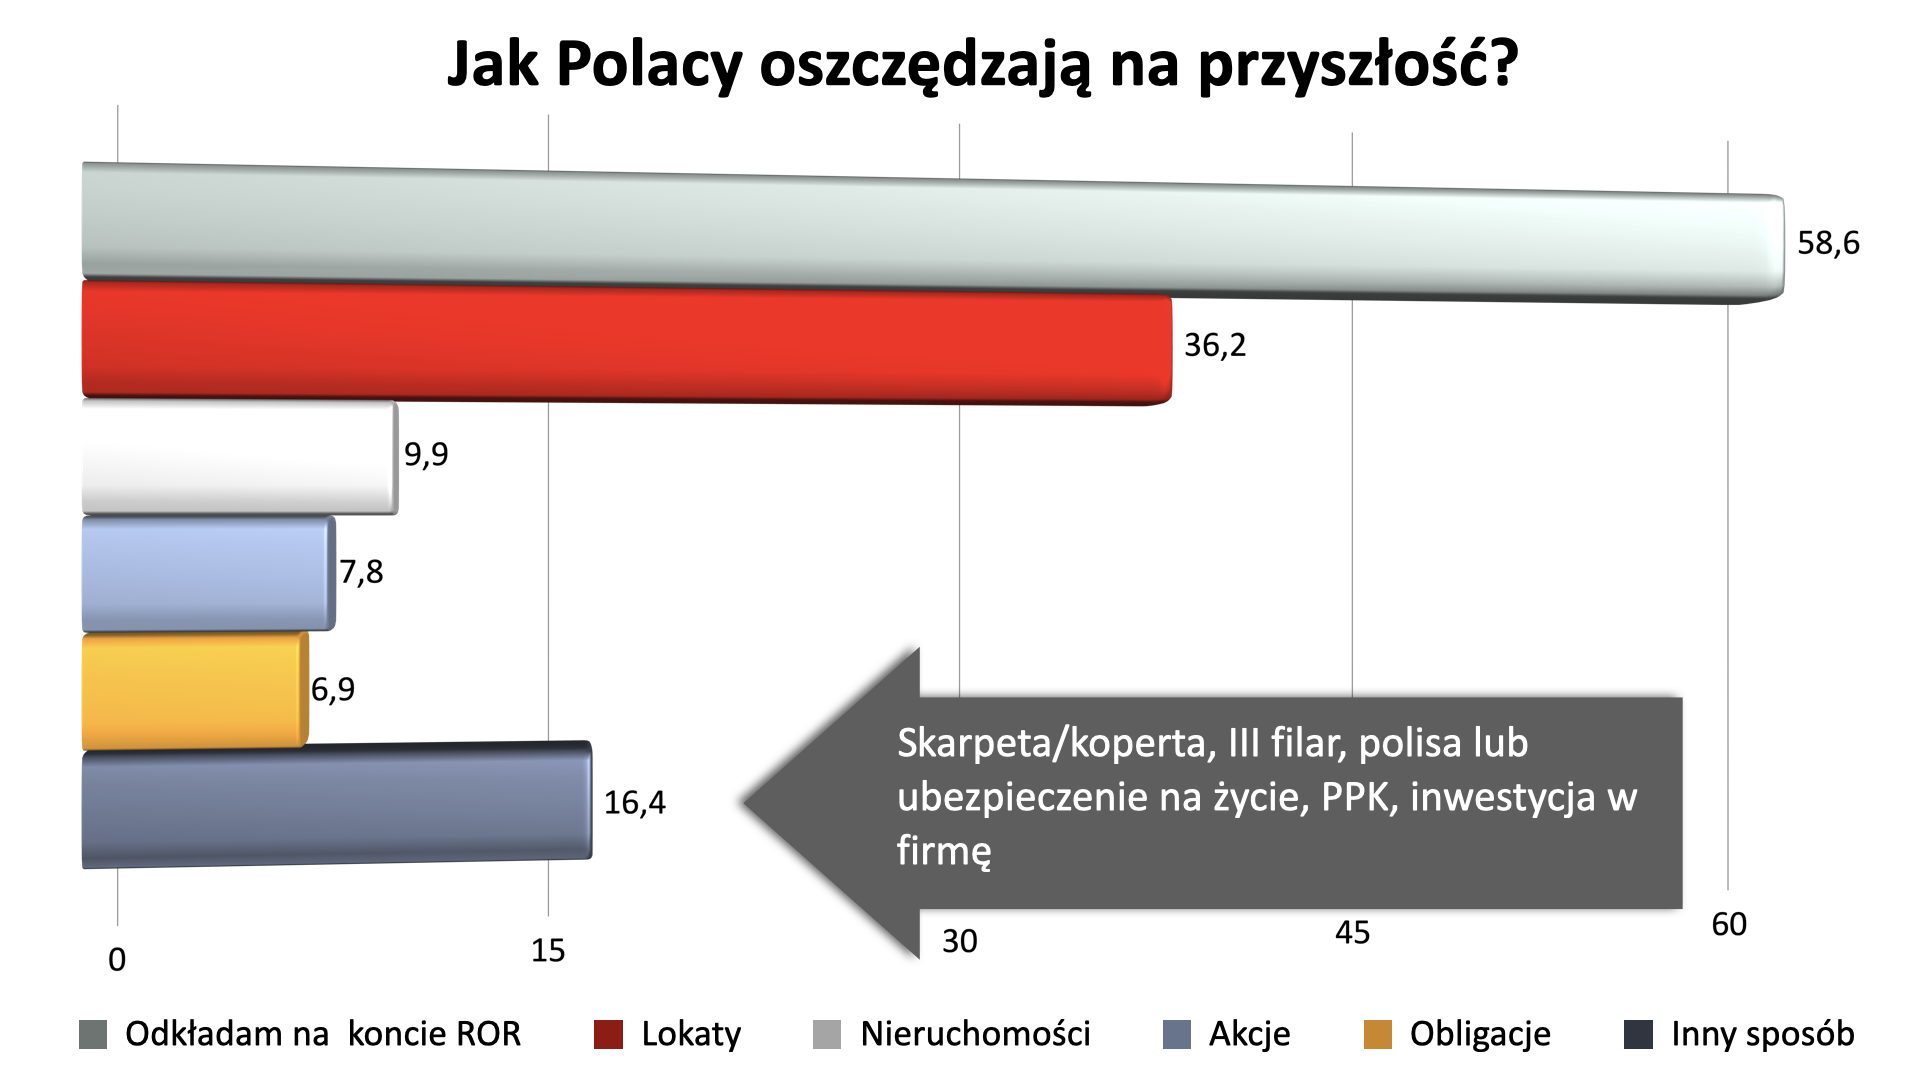 Raport PFR Portal PPK. Jak oszczędzają Polacy? 